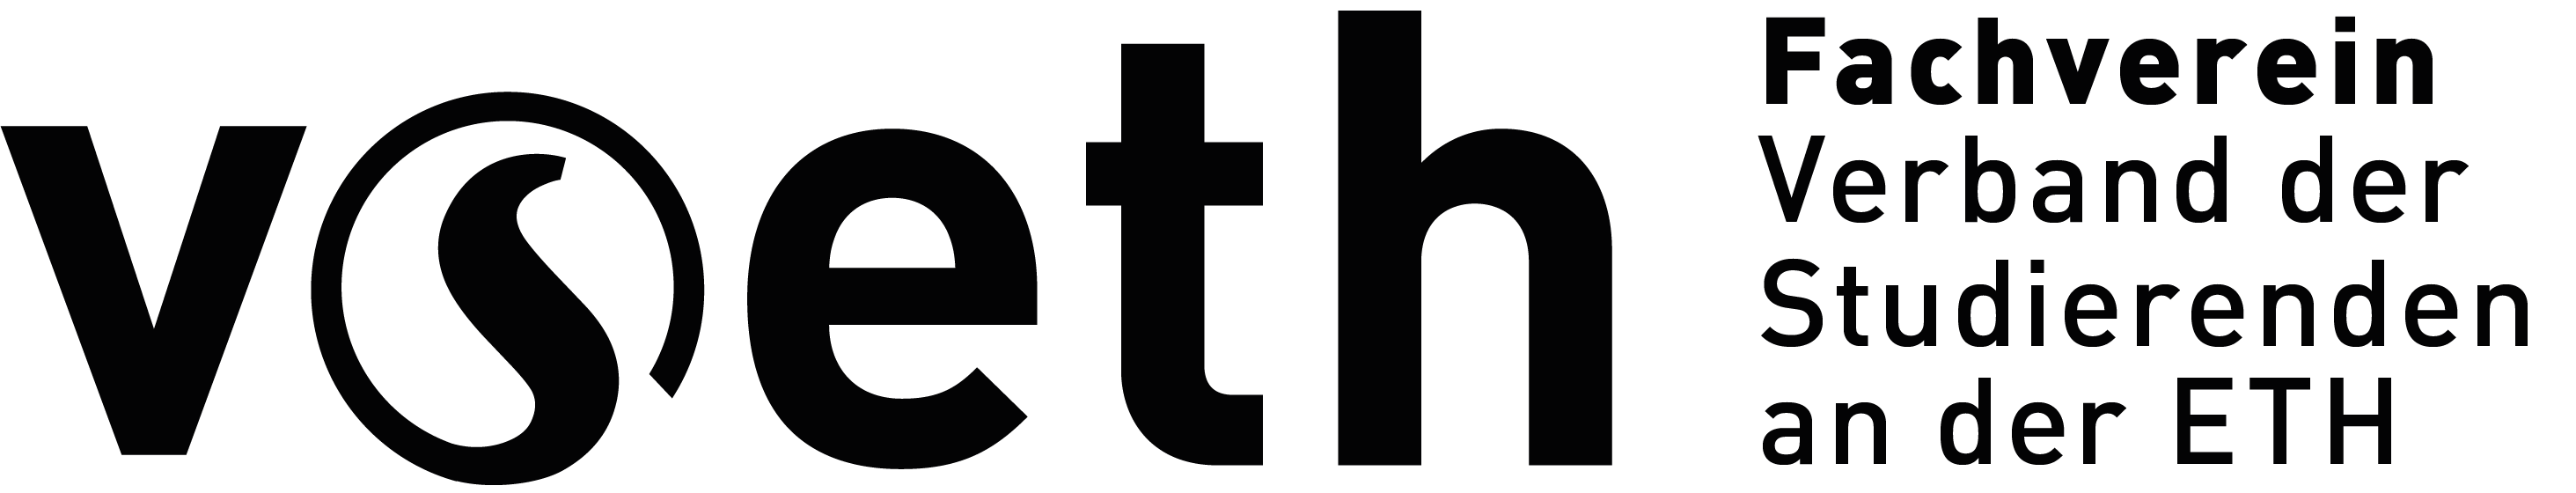 vseth-logo